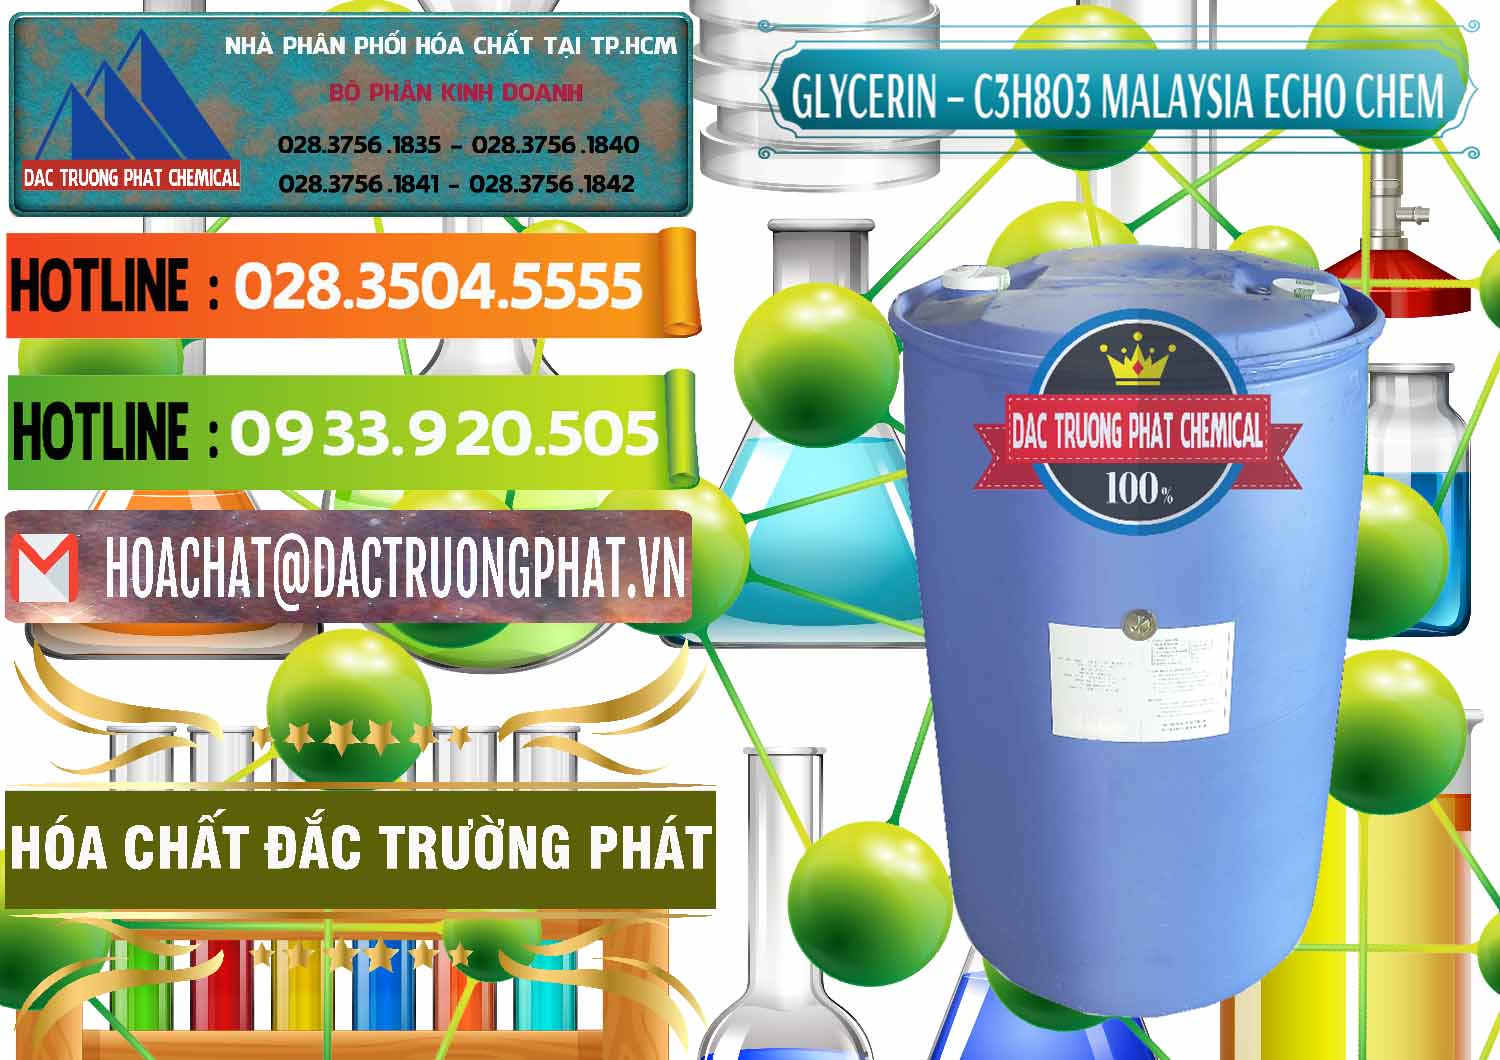 Đơn vị kinh doanh và bán Glycerin – C3H8O3 99.7% Echo Chem Malaysia - 0273 - Nhà cung cấp _ kinh doanh hóa chất tại TP.HCM - cungcaphoachat.com.vn